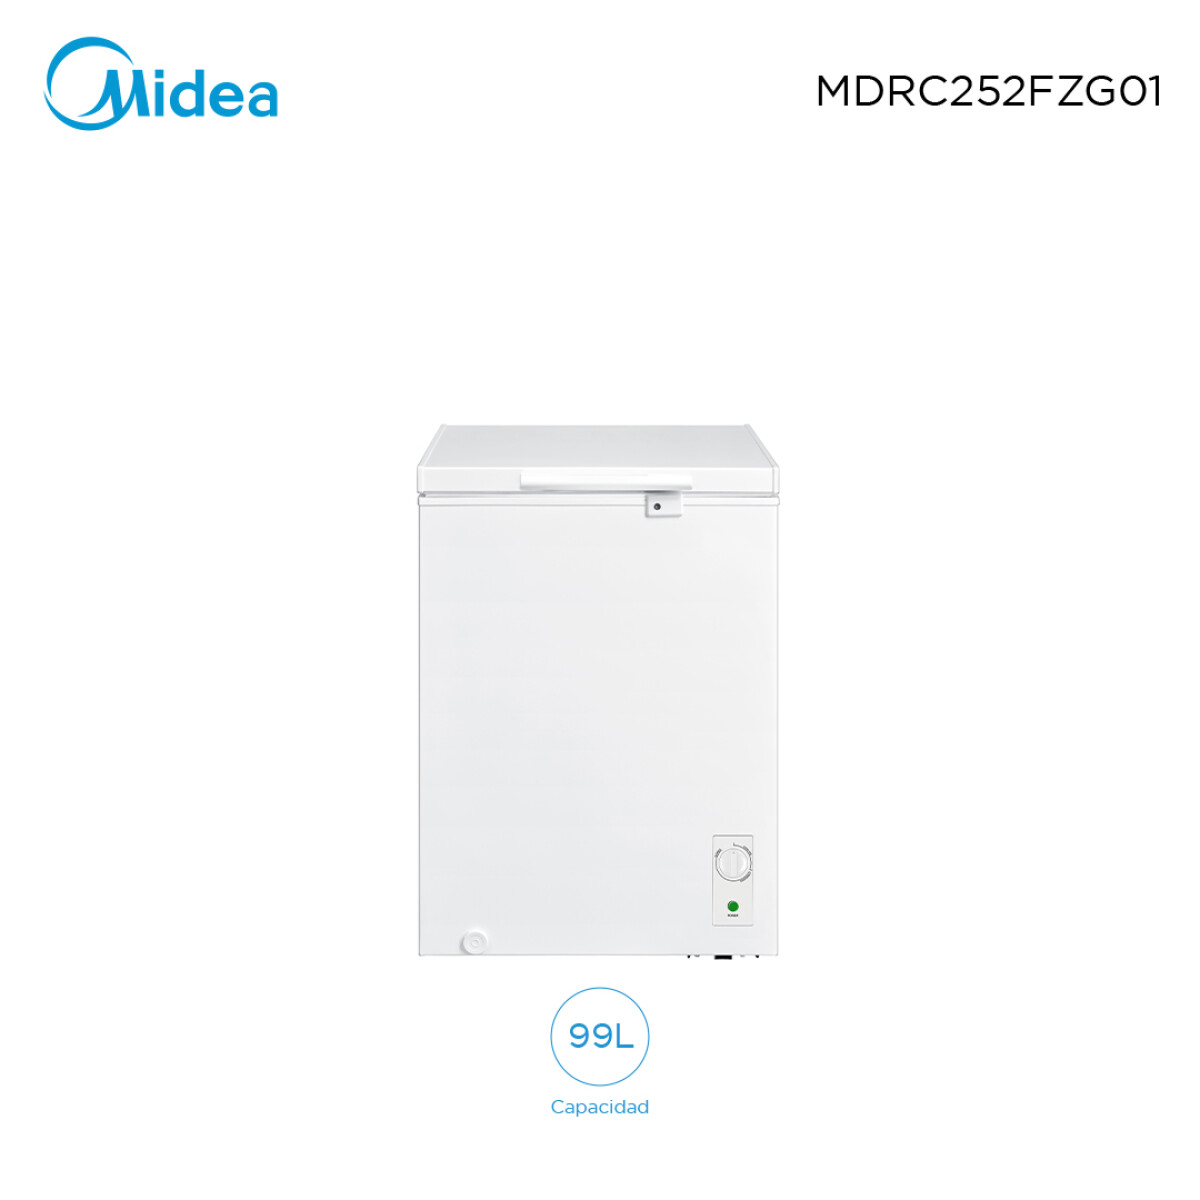 Freezer 99L Midea MDRC252FZG01 